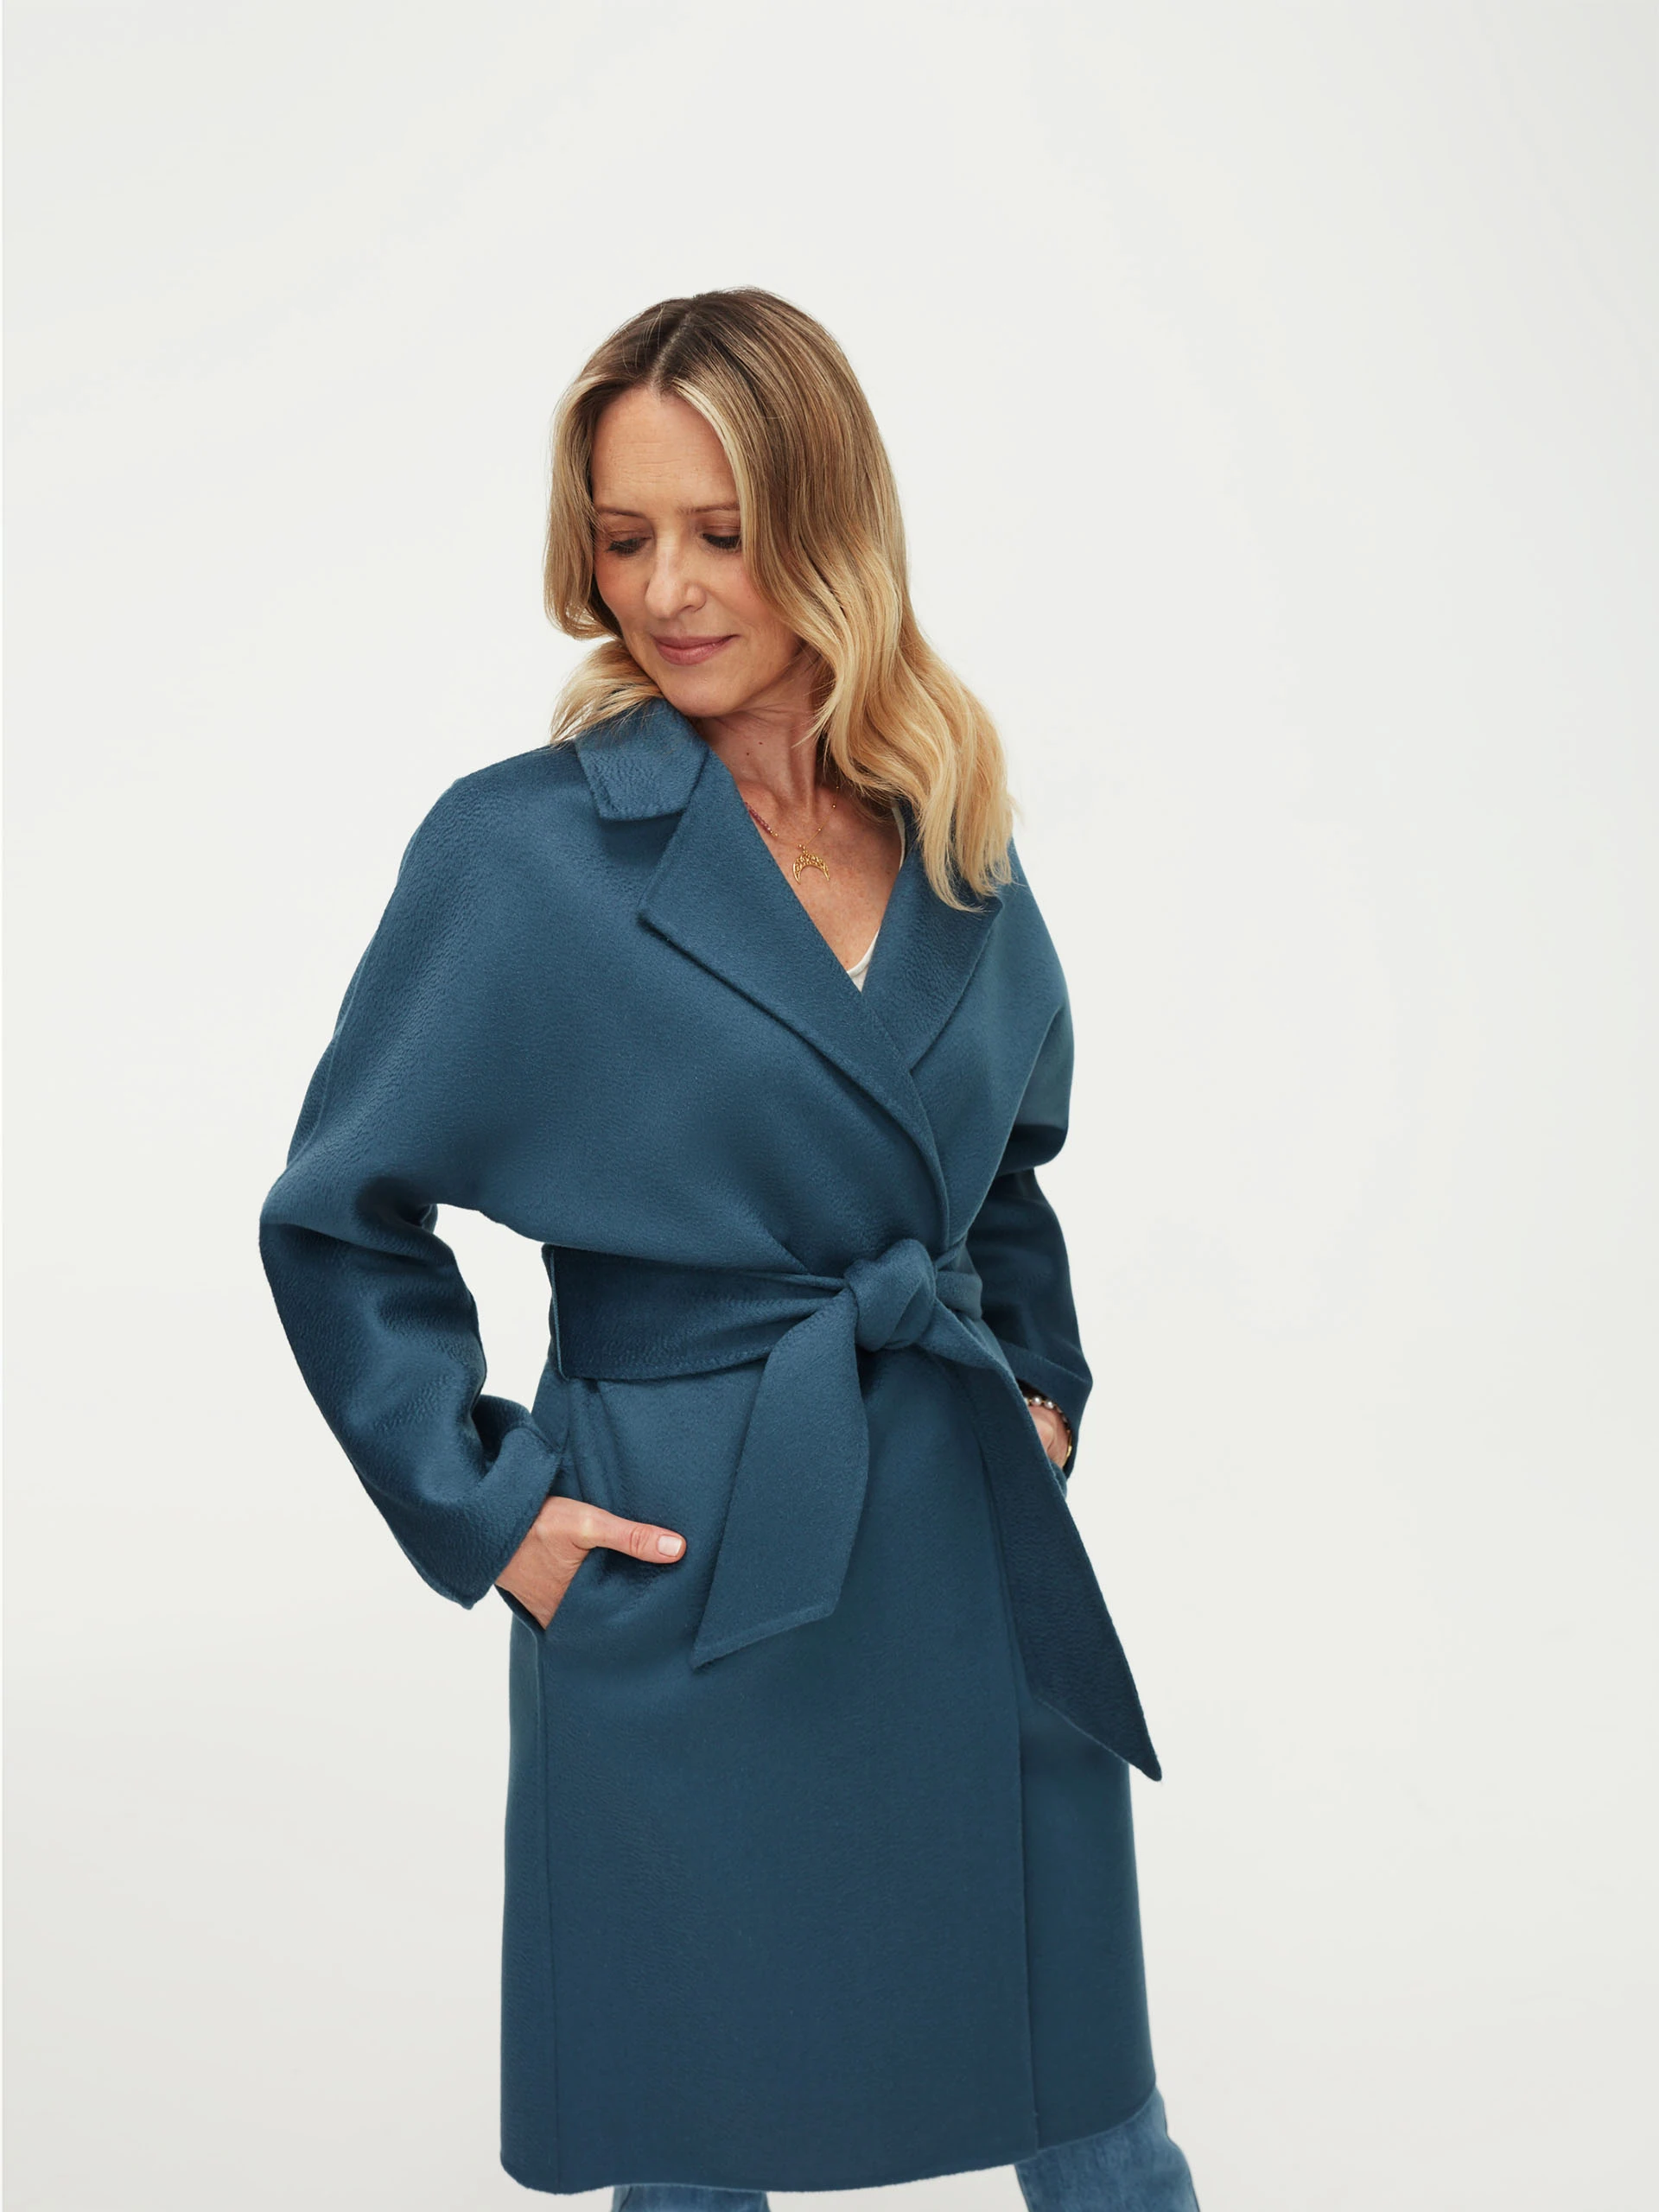 Wool coat in blue with zibellino effect